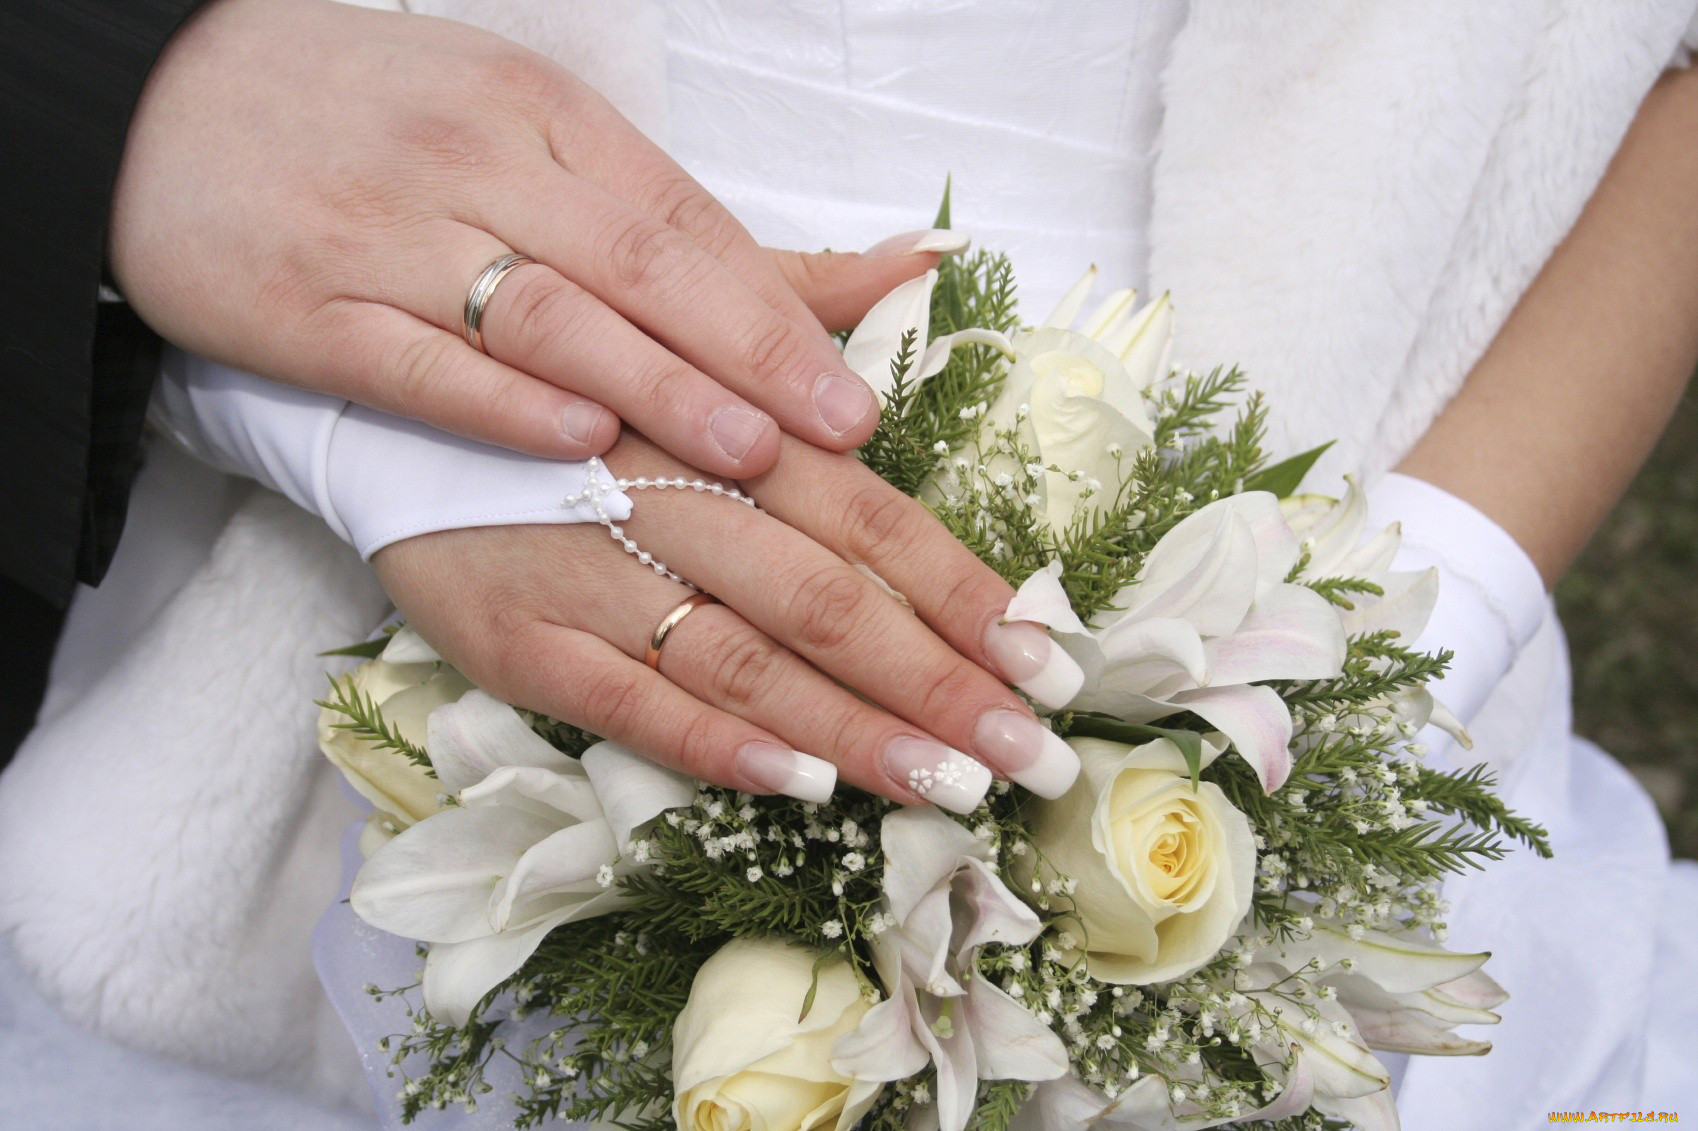 Обручальных колец на руках жениха и невесты в домашних условиях